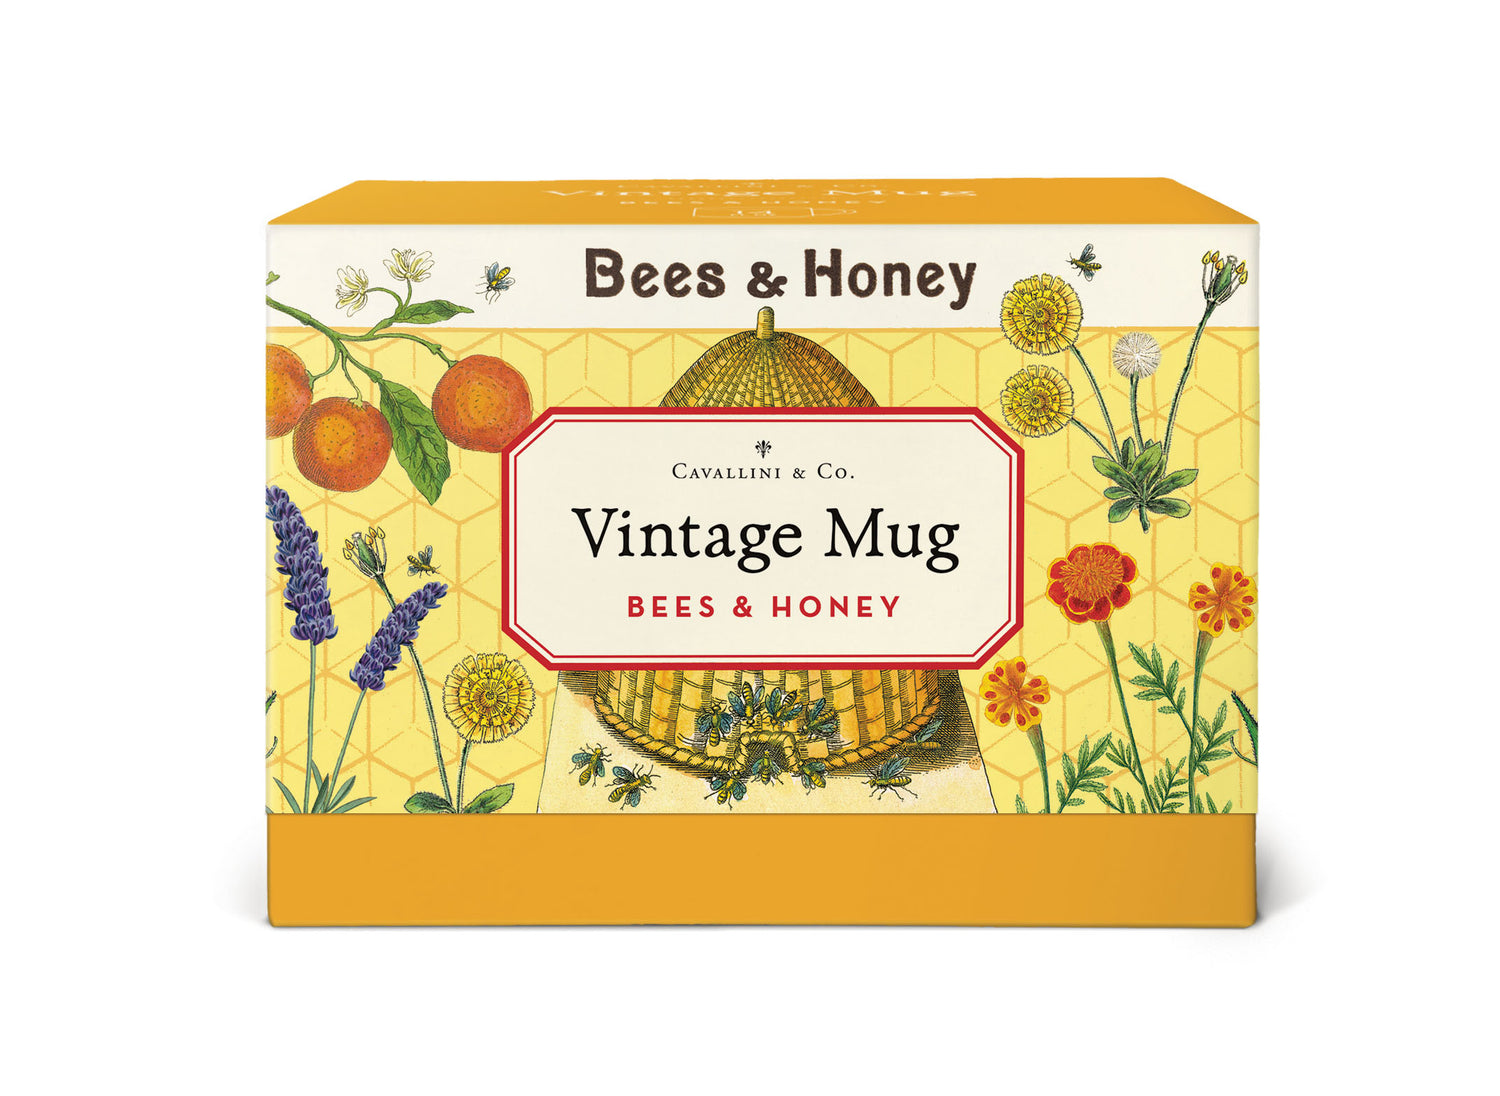 Bees &amp; Honey Ceramic Mug